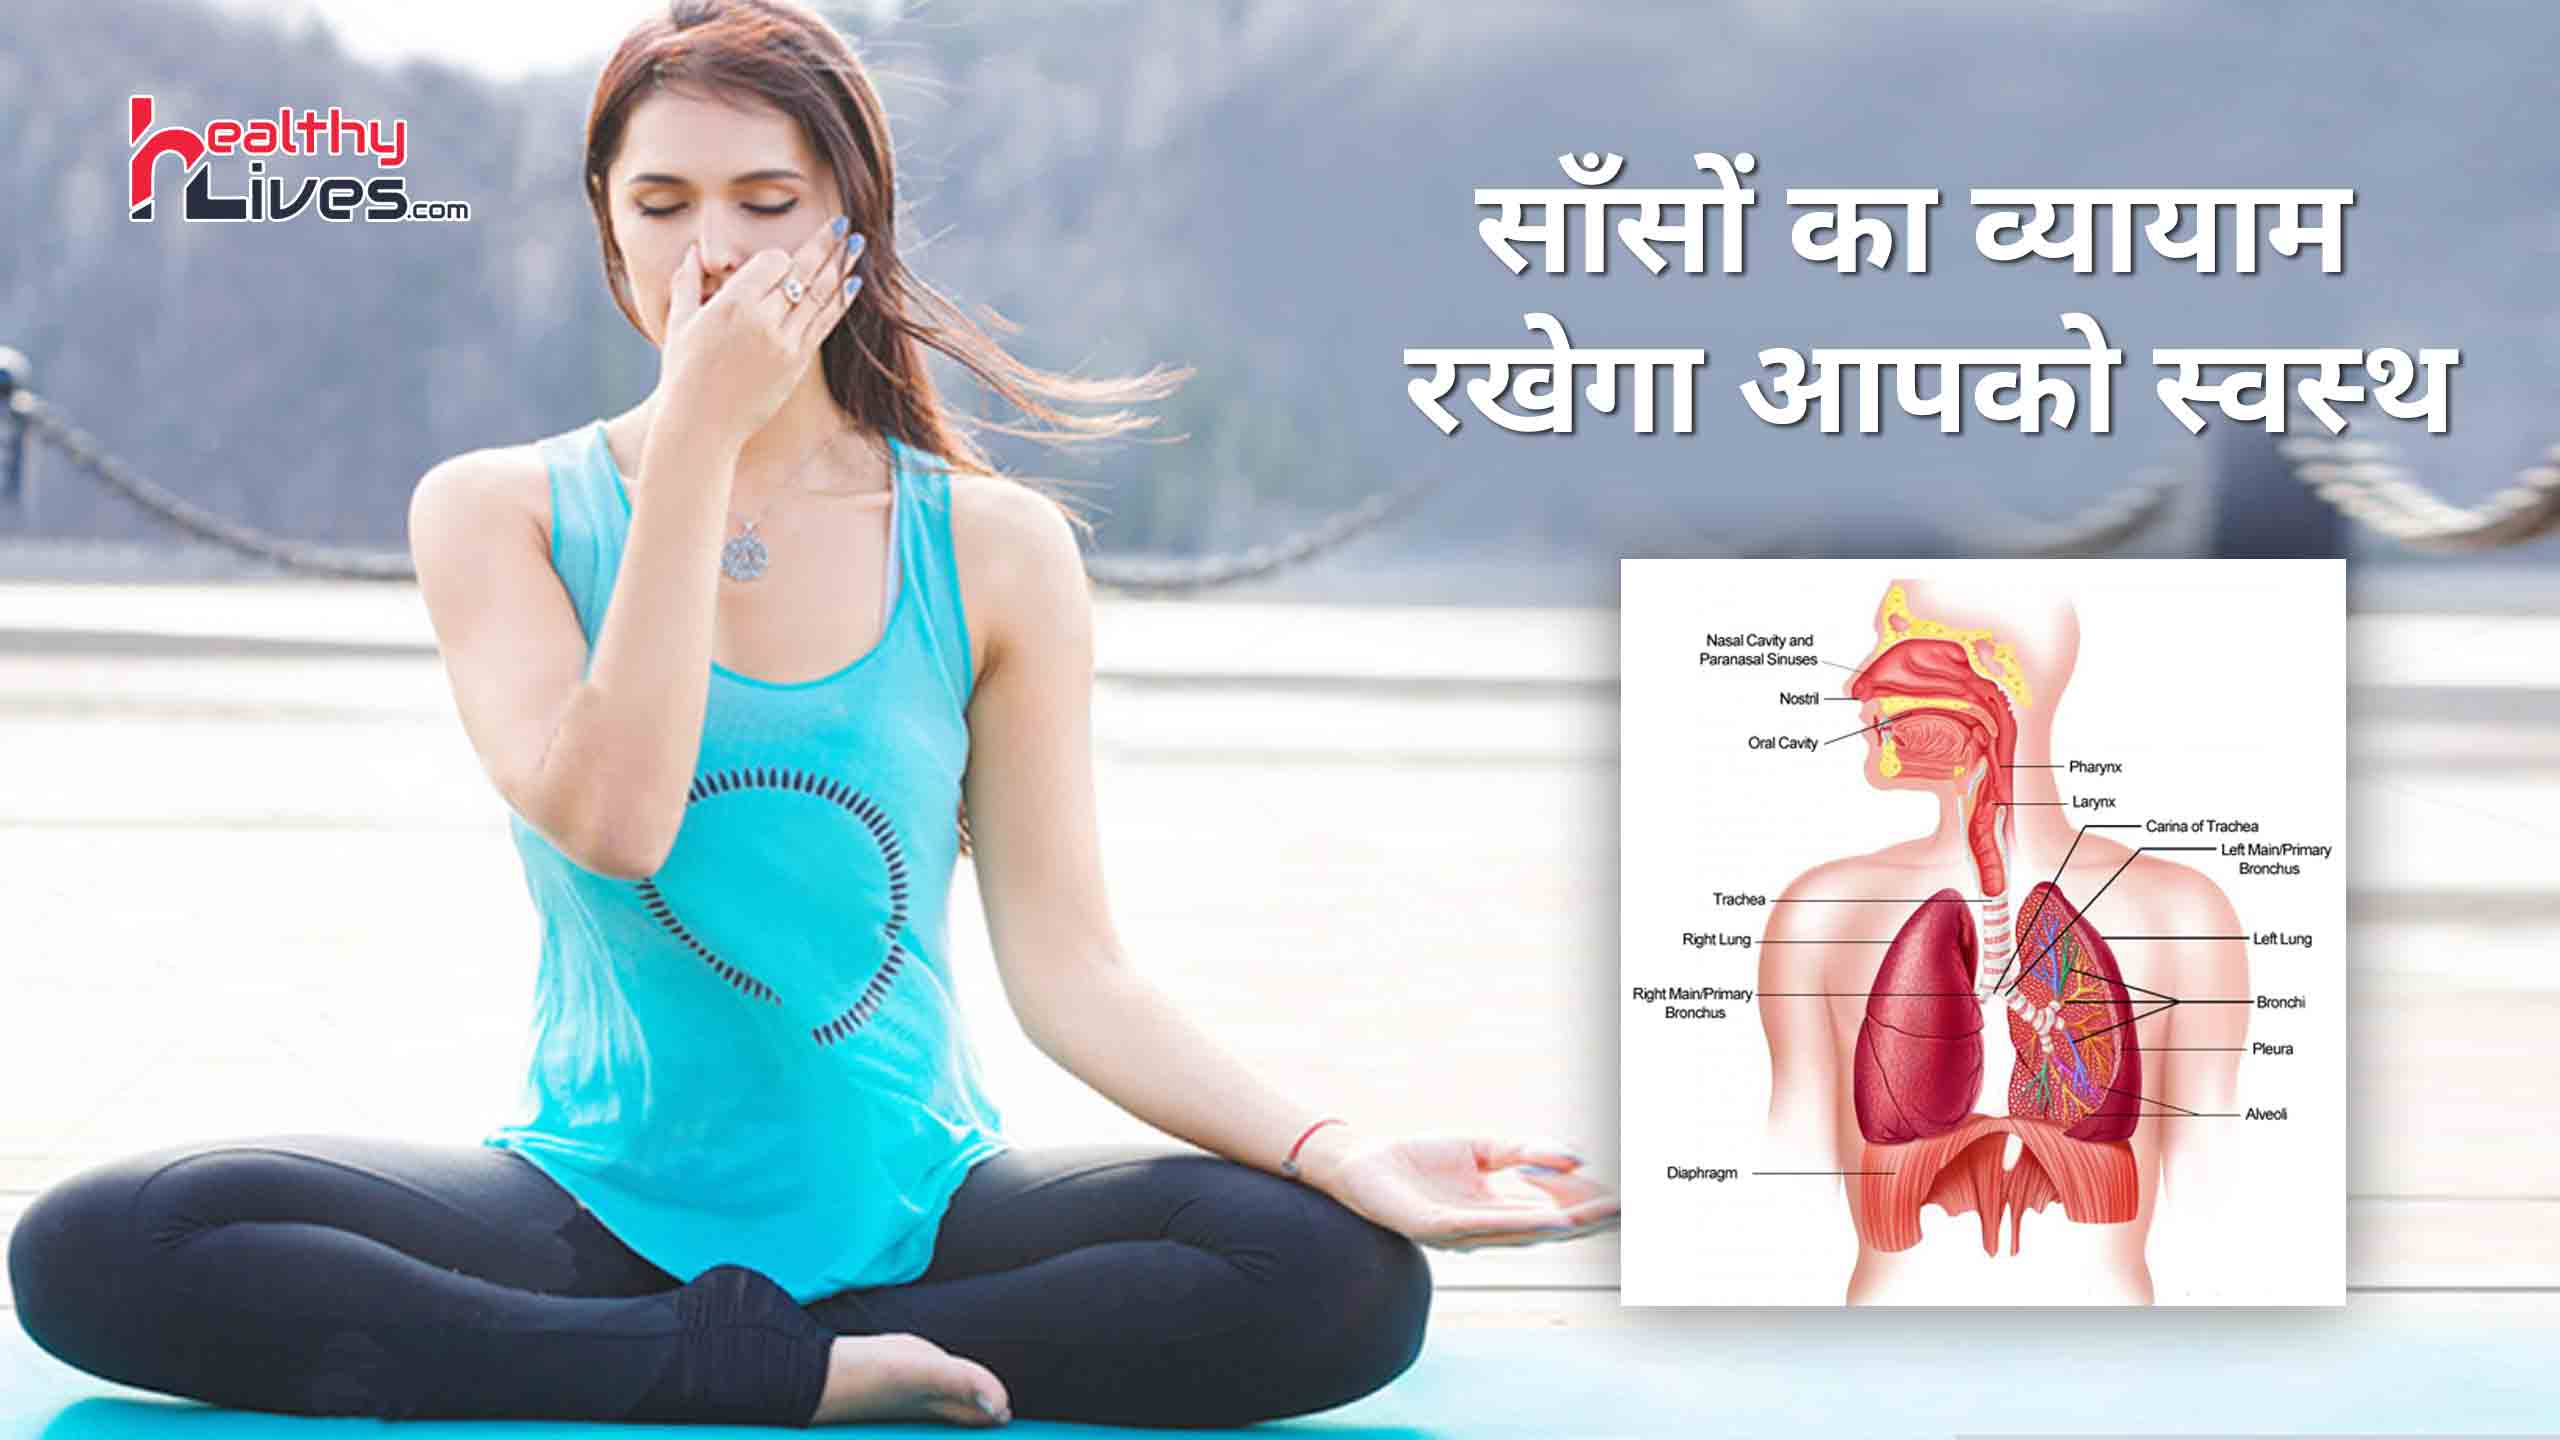 Breathing Exercises in Hindi: सांसो का व्यायाम बनाये रखेगा आपको स्वस्थ और सेहतमंद